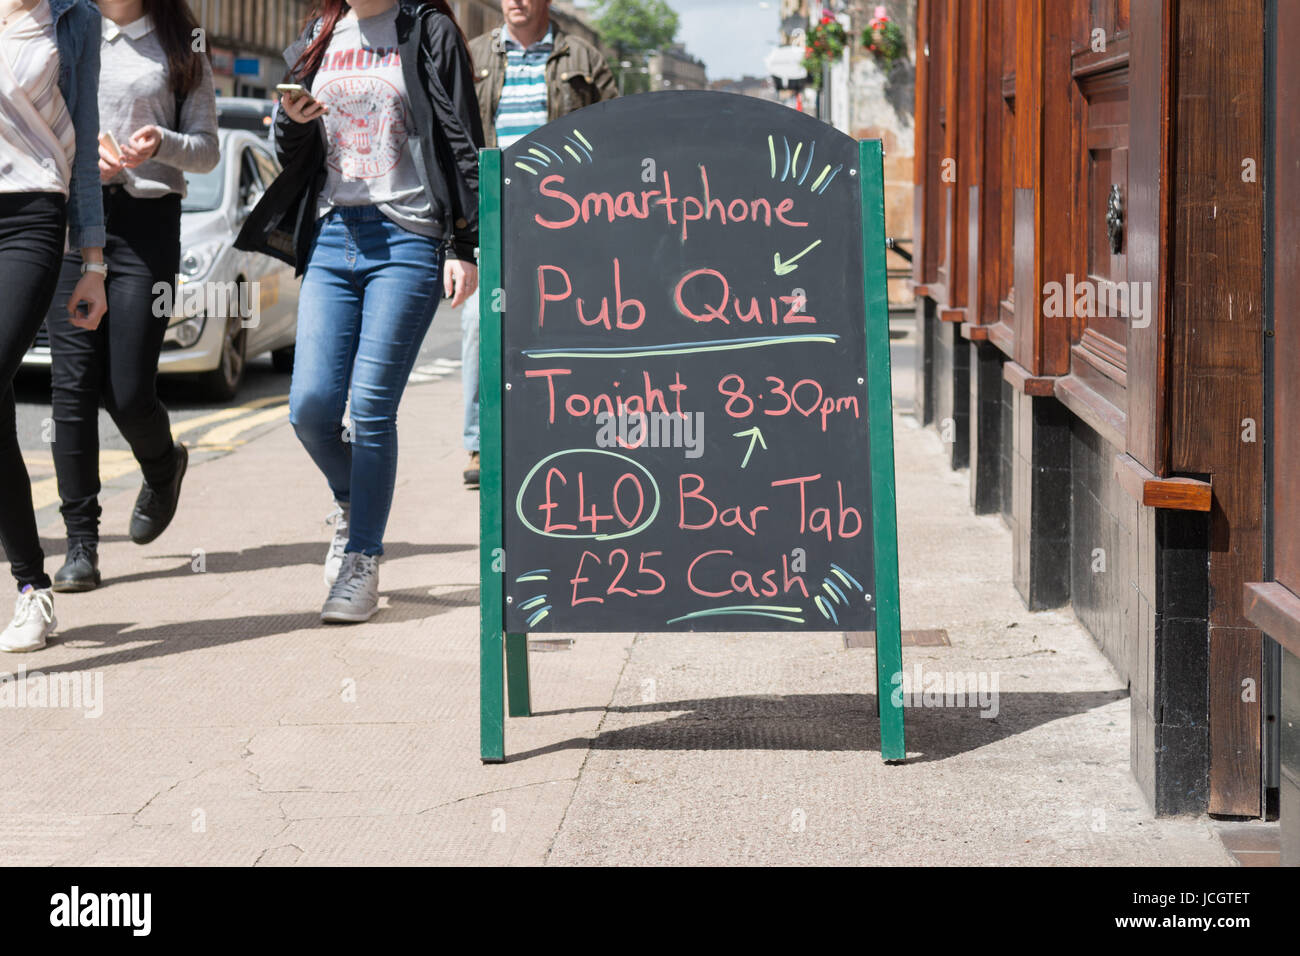 Quiz Pub Smartphone conseil publicité, Finnieston, Glasgow, Écosse, Royaume-Uni Banque D'Images